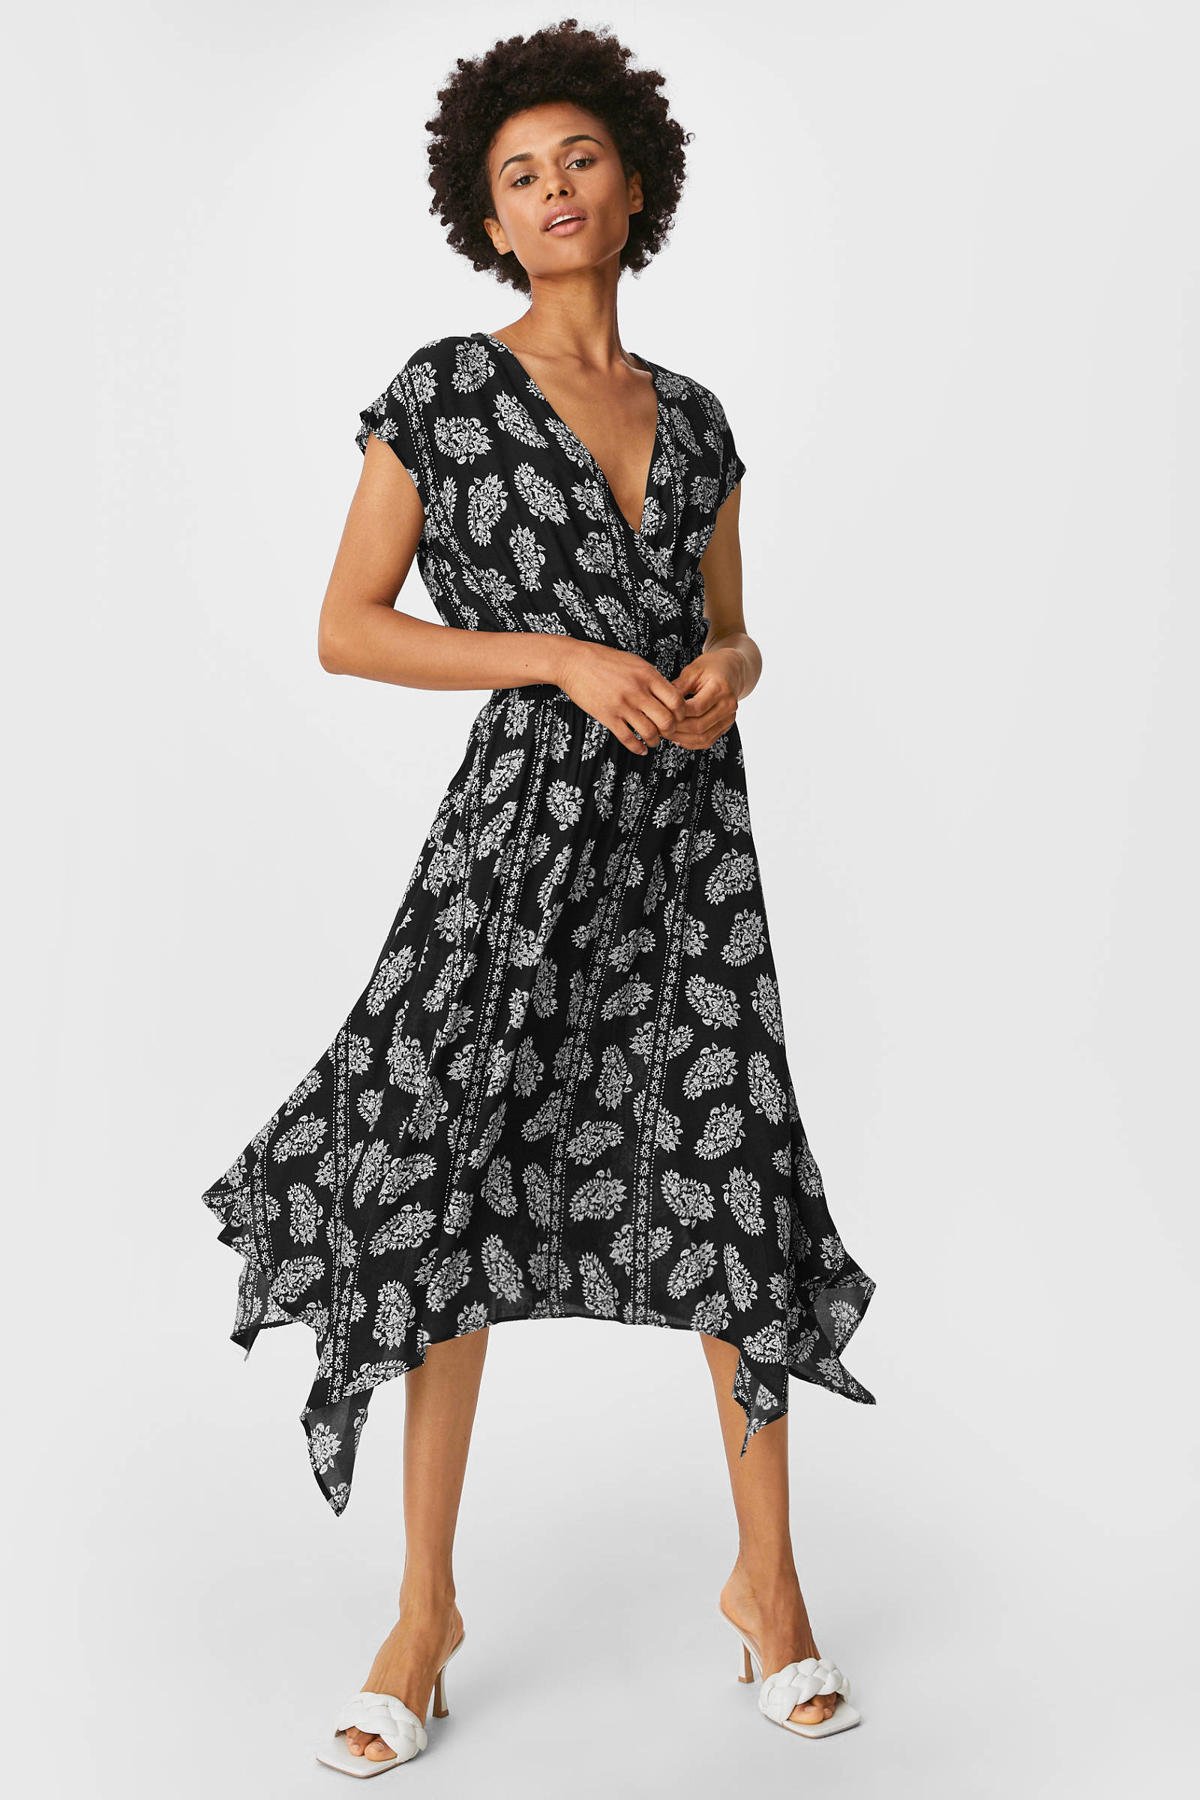 Afwijzen door elkaar haspelen Notitie C&A A-lijn jurk met paisleyprint en plooien zwart/wit | wehkamp